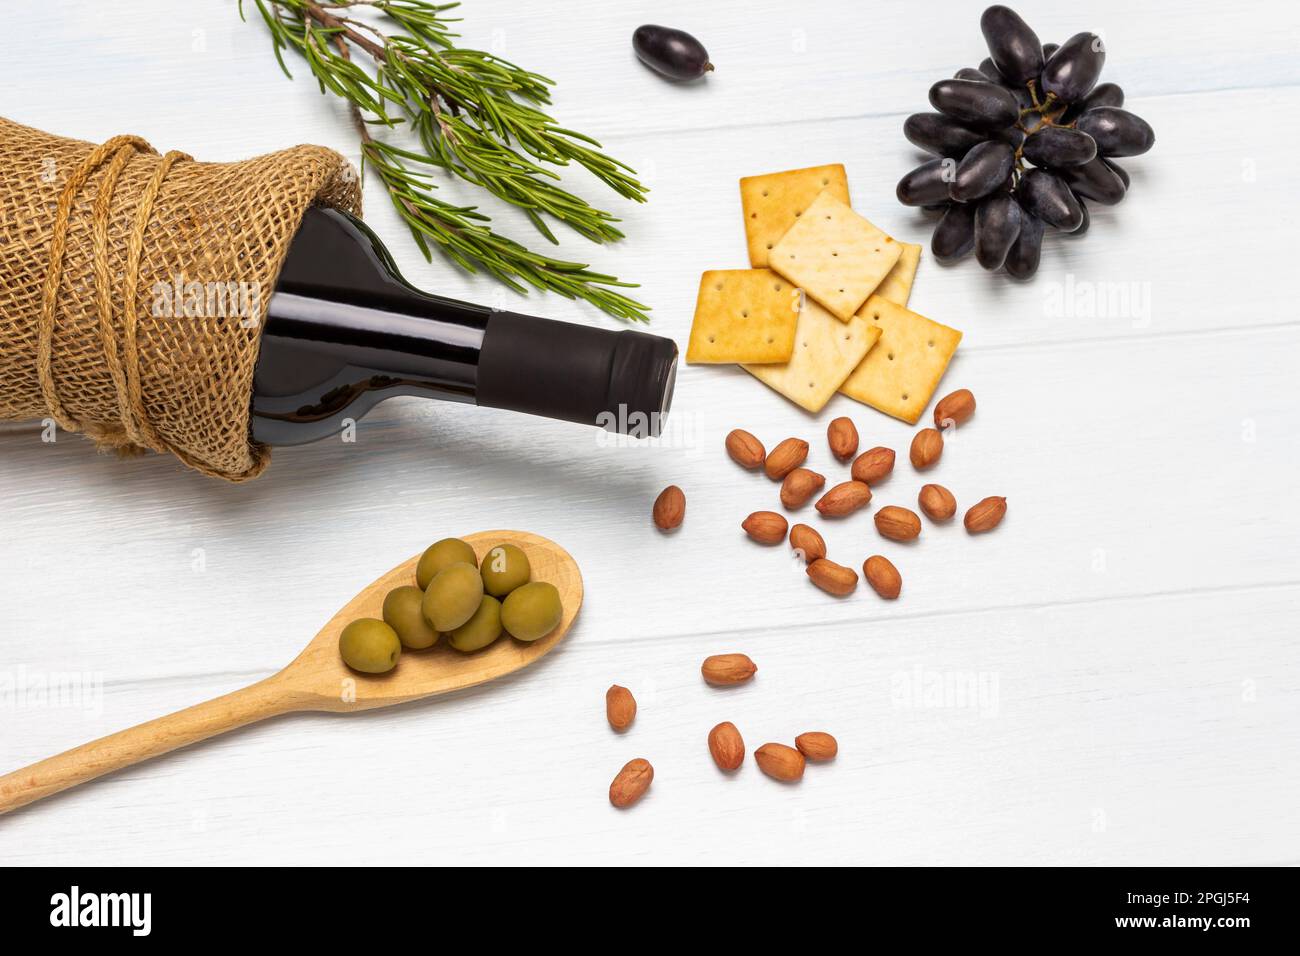 Grüne Oliven in Holzlöffel. Nüsse, Cracker und Zweige schwarzer Trauben auf dem Tisch. Eine Flasche Wein. Weißer Hintergrund. Stockfoto